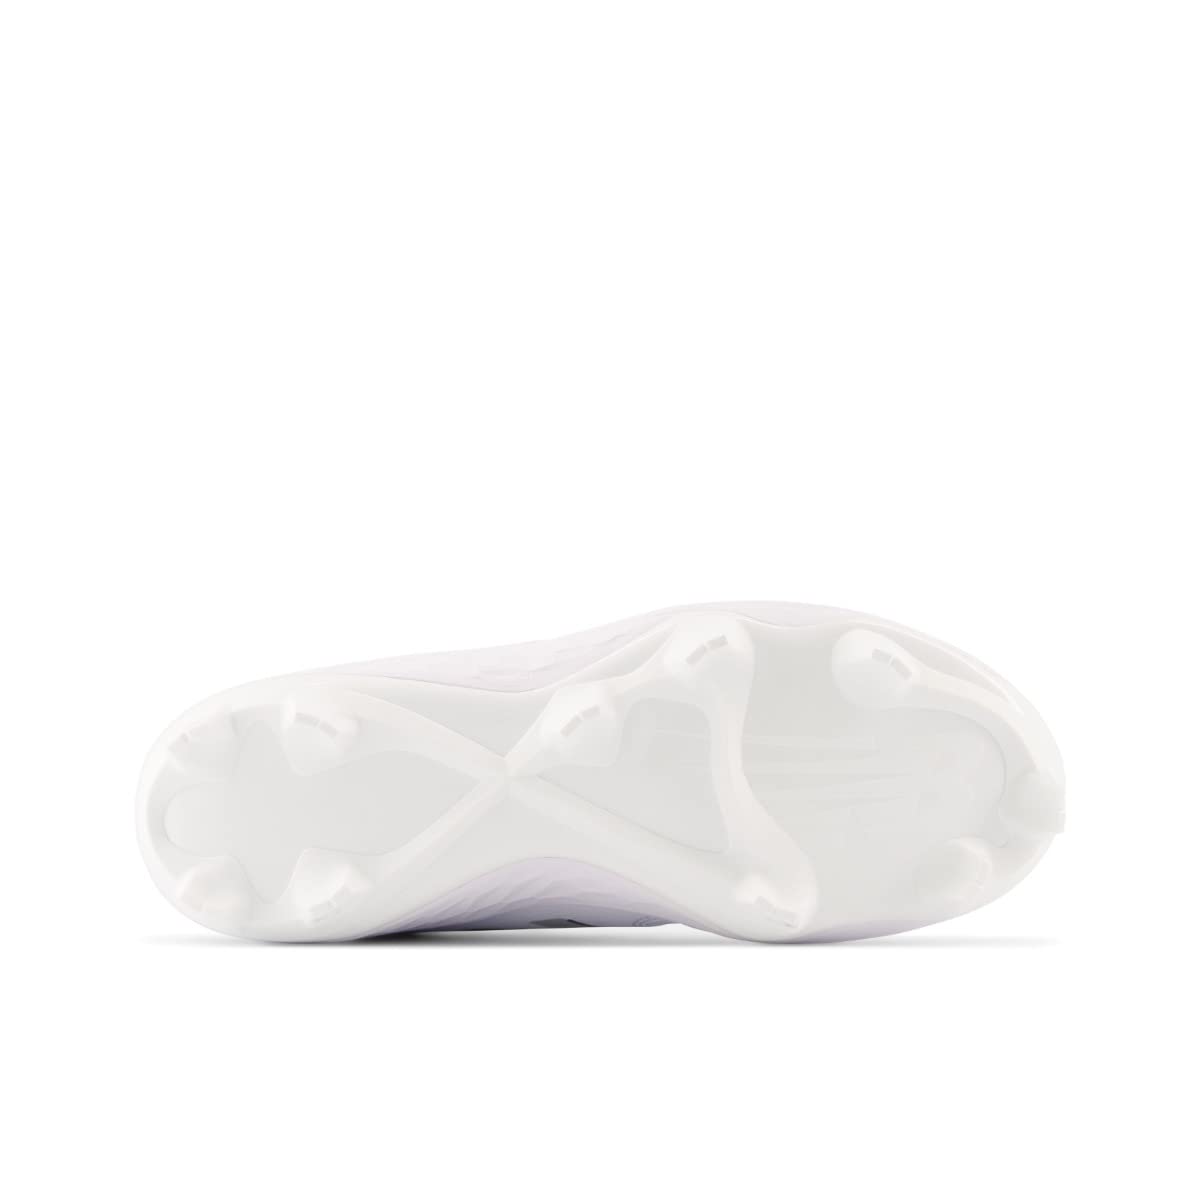 New Balance Women's Fresh Foam Velo V3 Molded Softball Shoe, White/White, 9